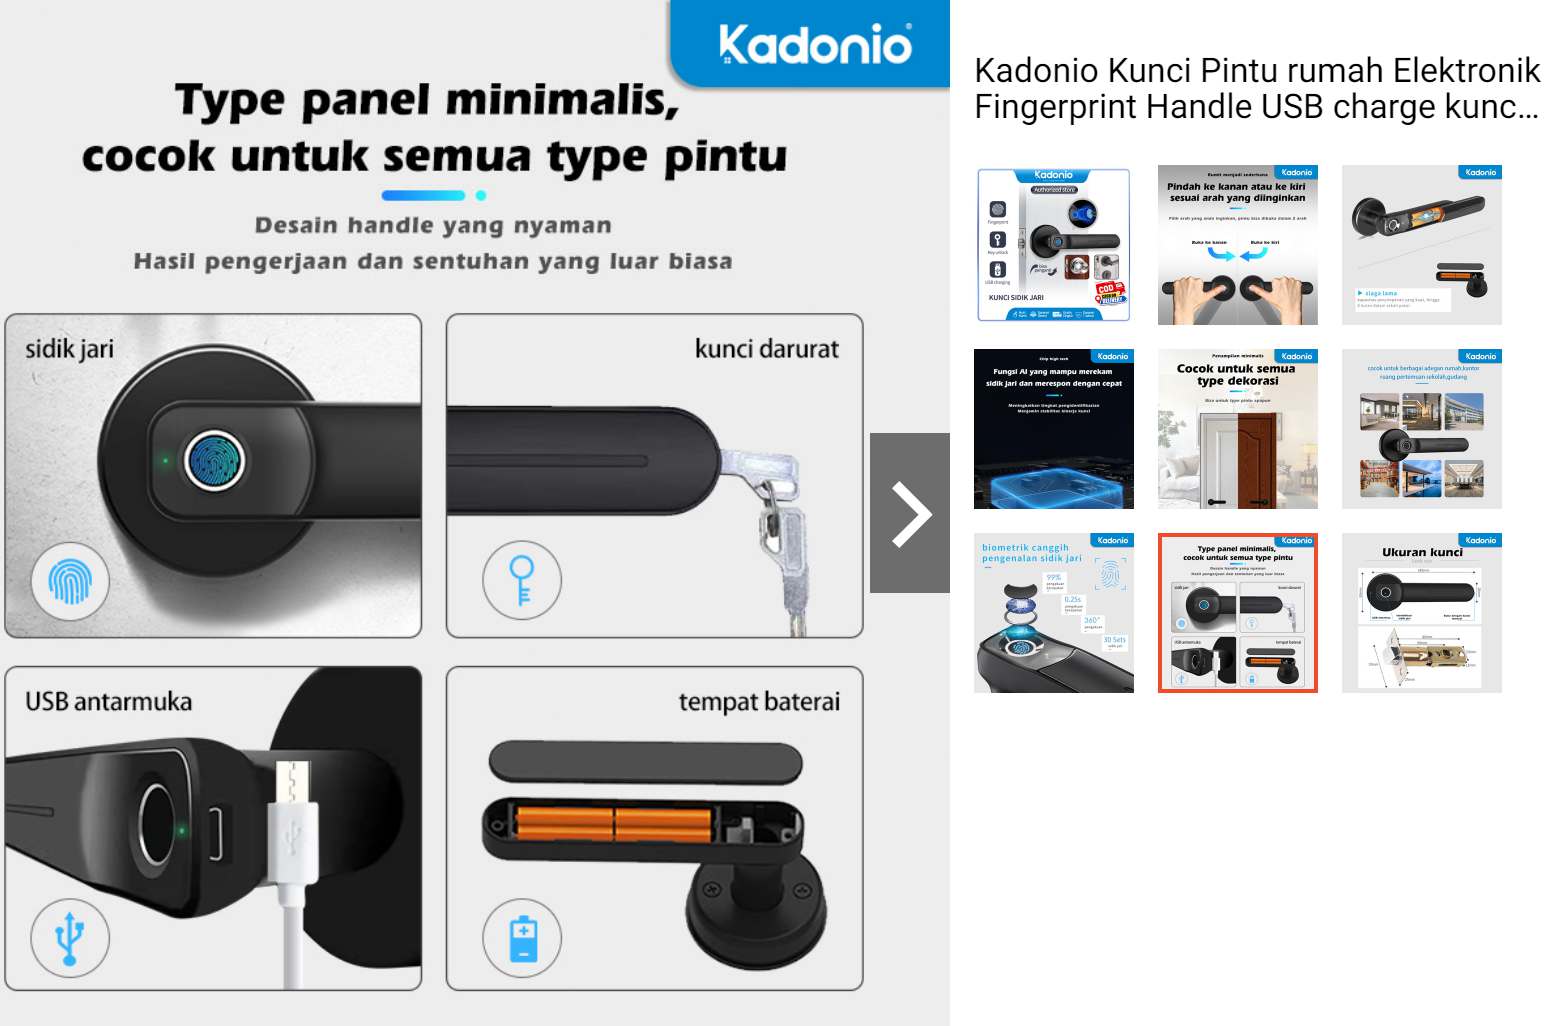 Kadonio HD-401 Kunci Pintu Elektronik Murah dengan Pemindai Sidik Jari dan Kunci Darurat USB